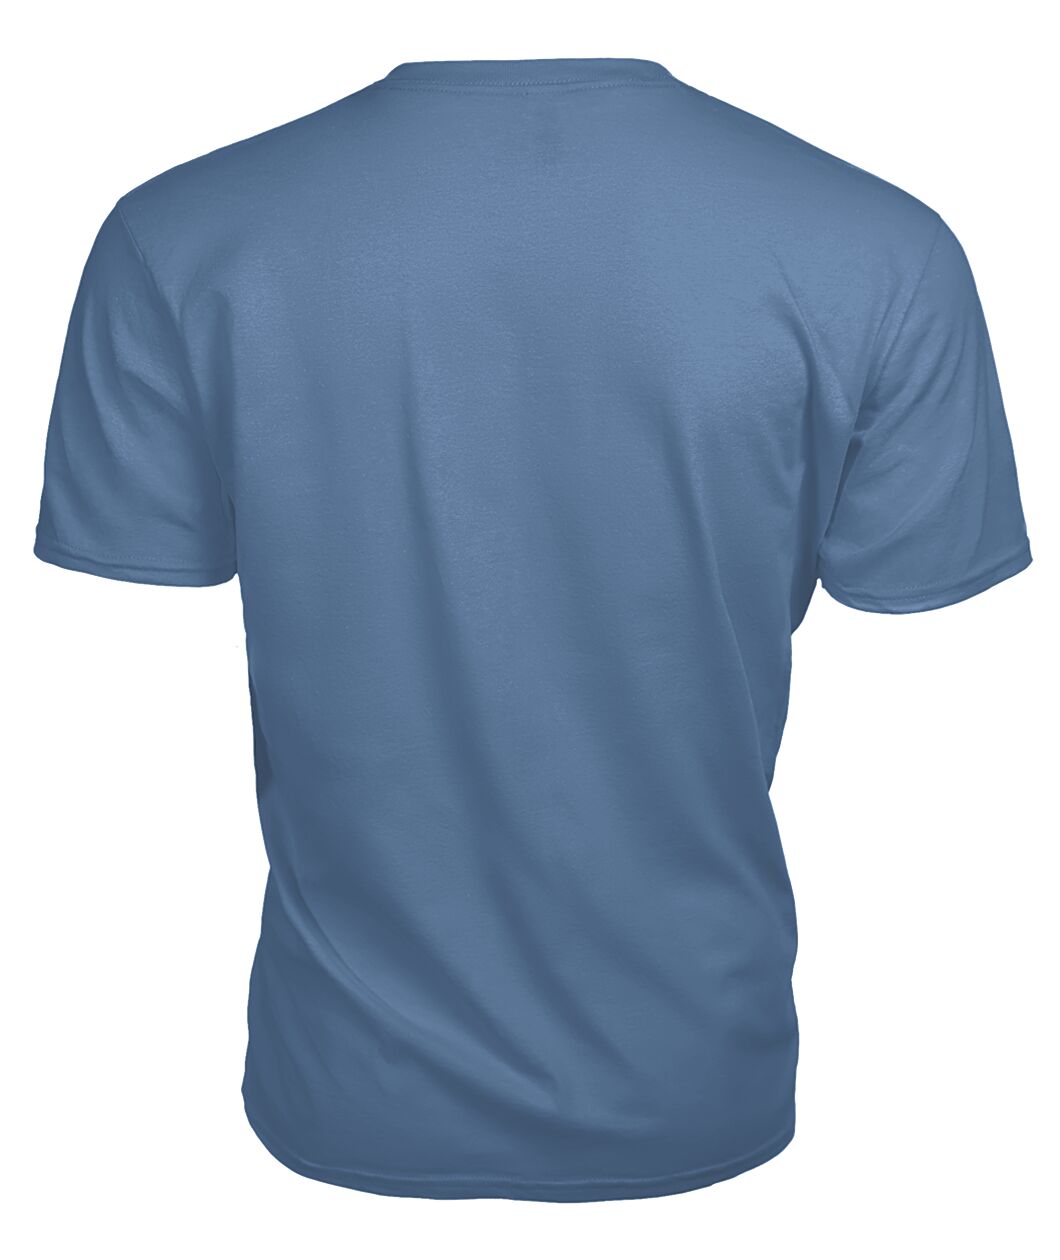 Slade Family Tartan - 2D T-shirt